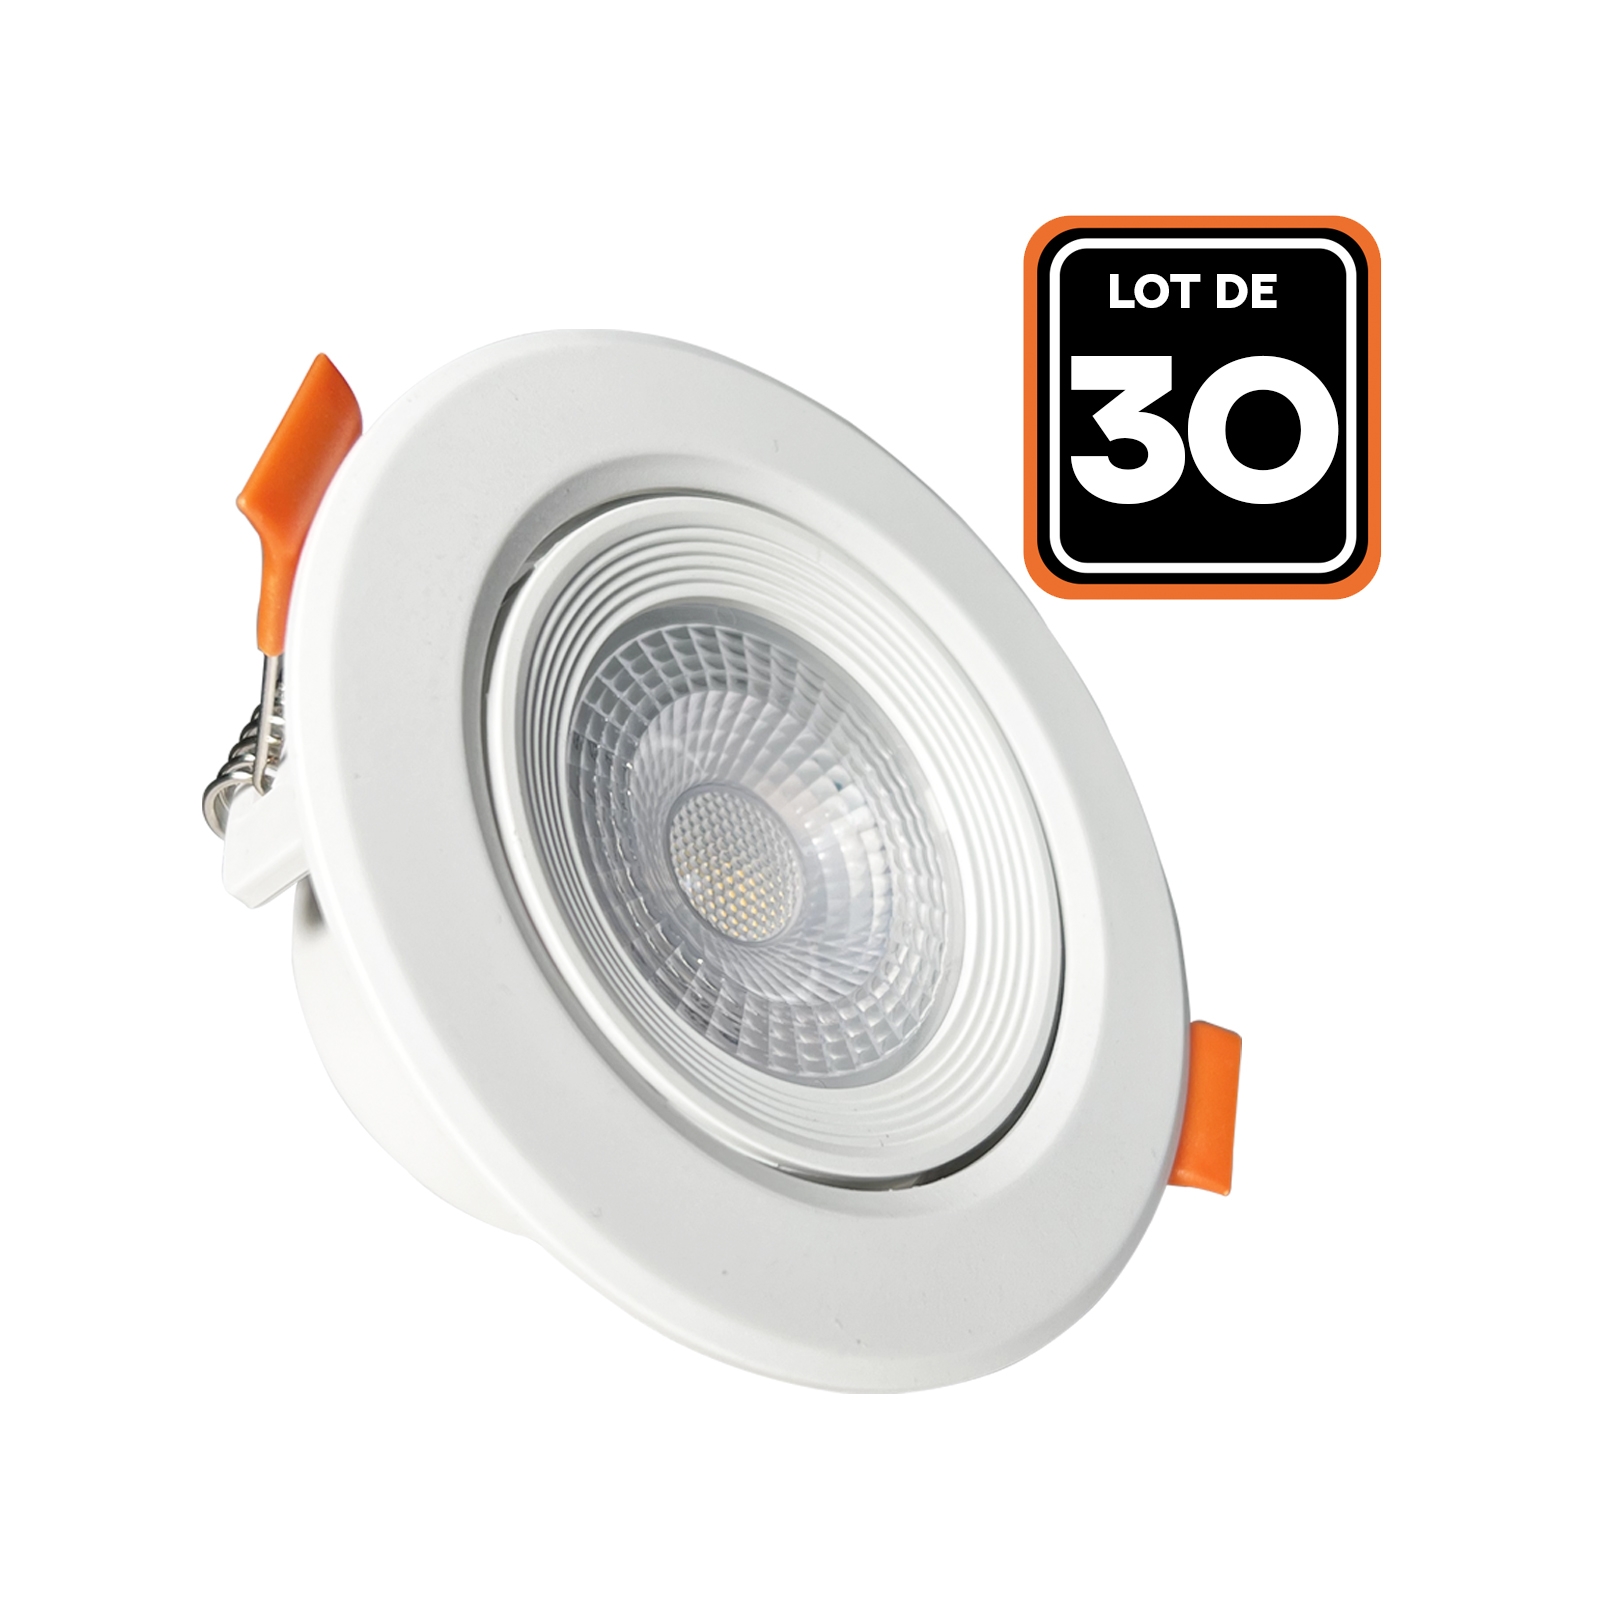 Lot de 30 Spot LED Encastrable Rond 5W - Blanc Neutre 4000K